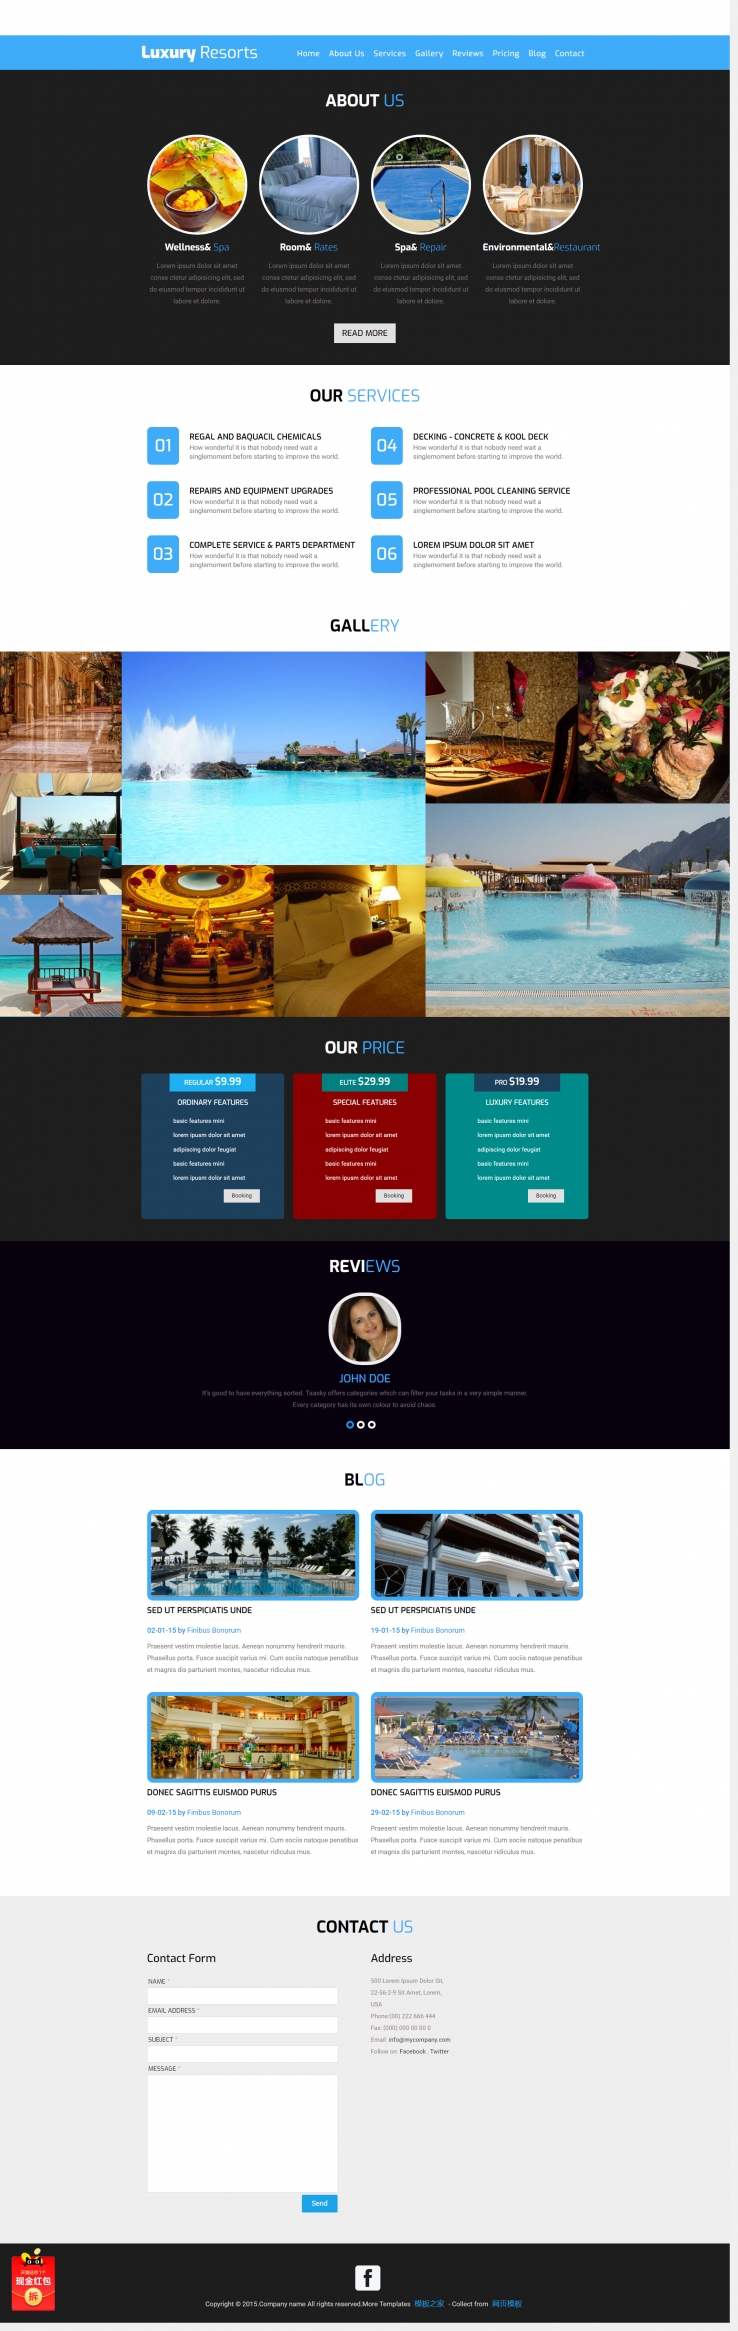 蓝色响应式的度假村旅游单页推广模板下载